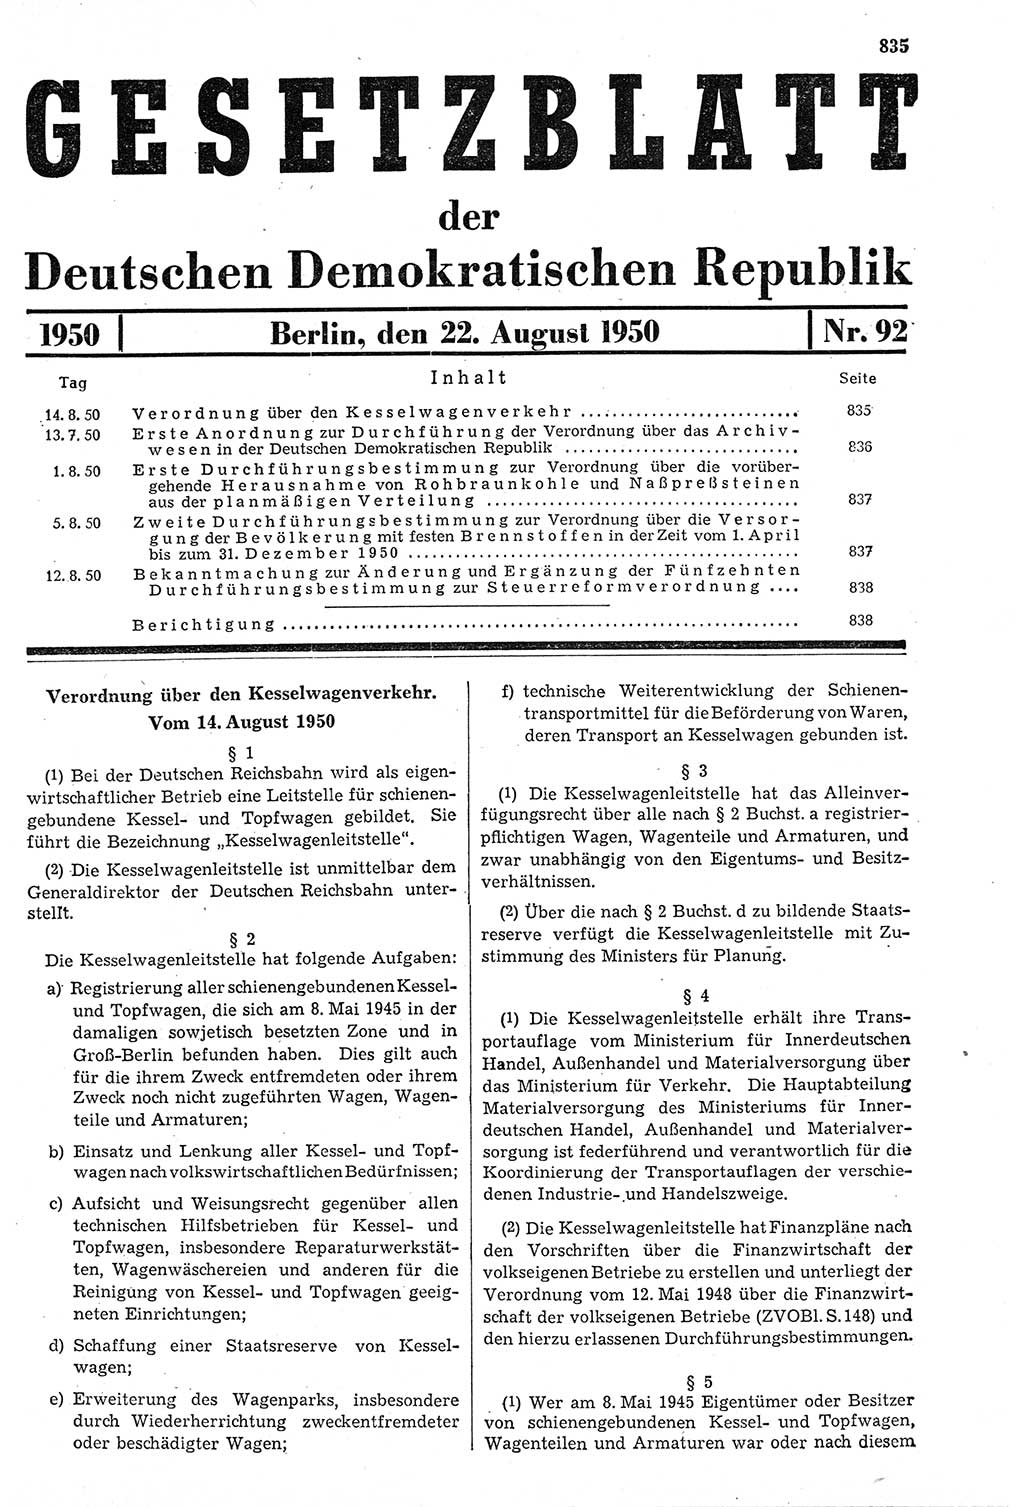 Gesetzblatt (GBl.) der Deutschen Demokratischen Republik (DDR) 1950, Seite 835 (GBl. DDR 1950, S. 835)